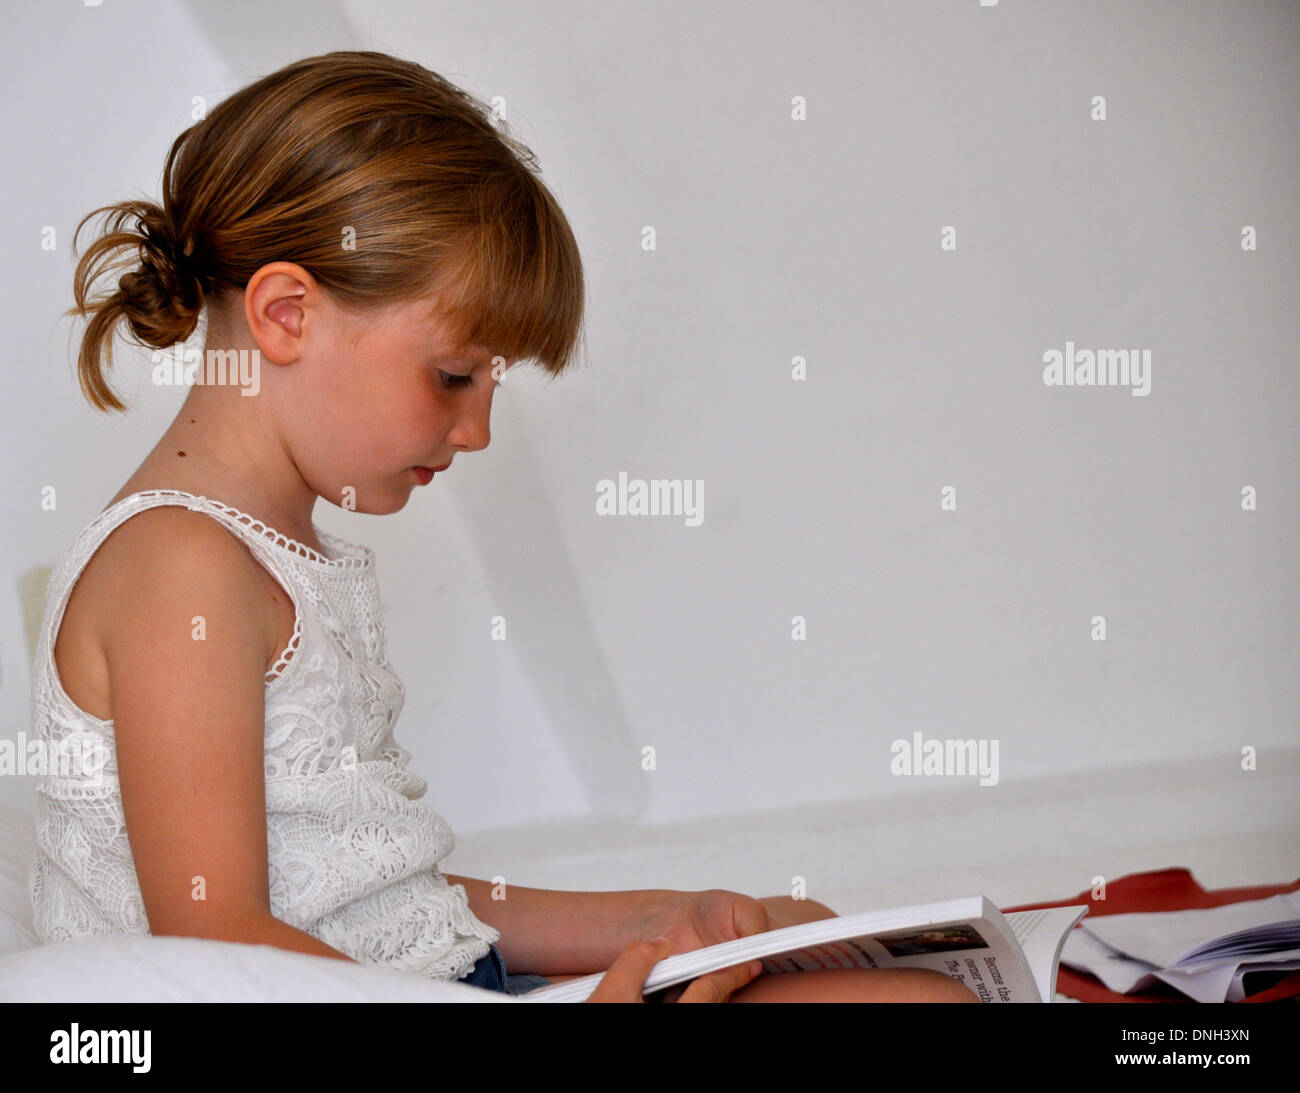 Portrait de profil d'une petite fille blonde vêtue de blanc de la lecture d'un livre sur un fond blanc en vacances Banque D'Images